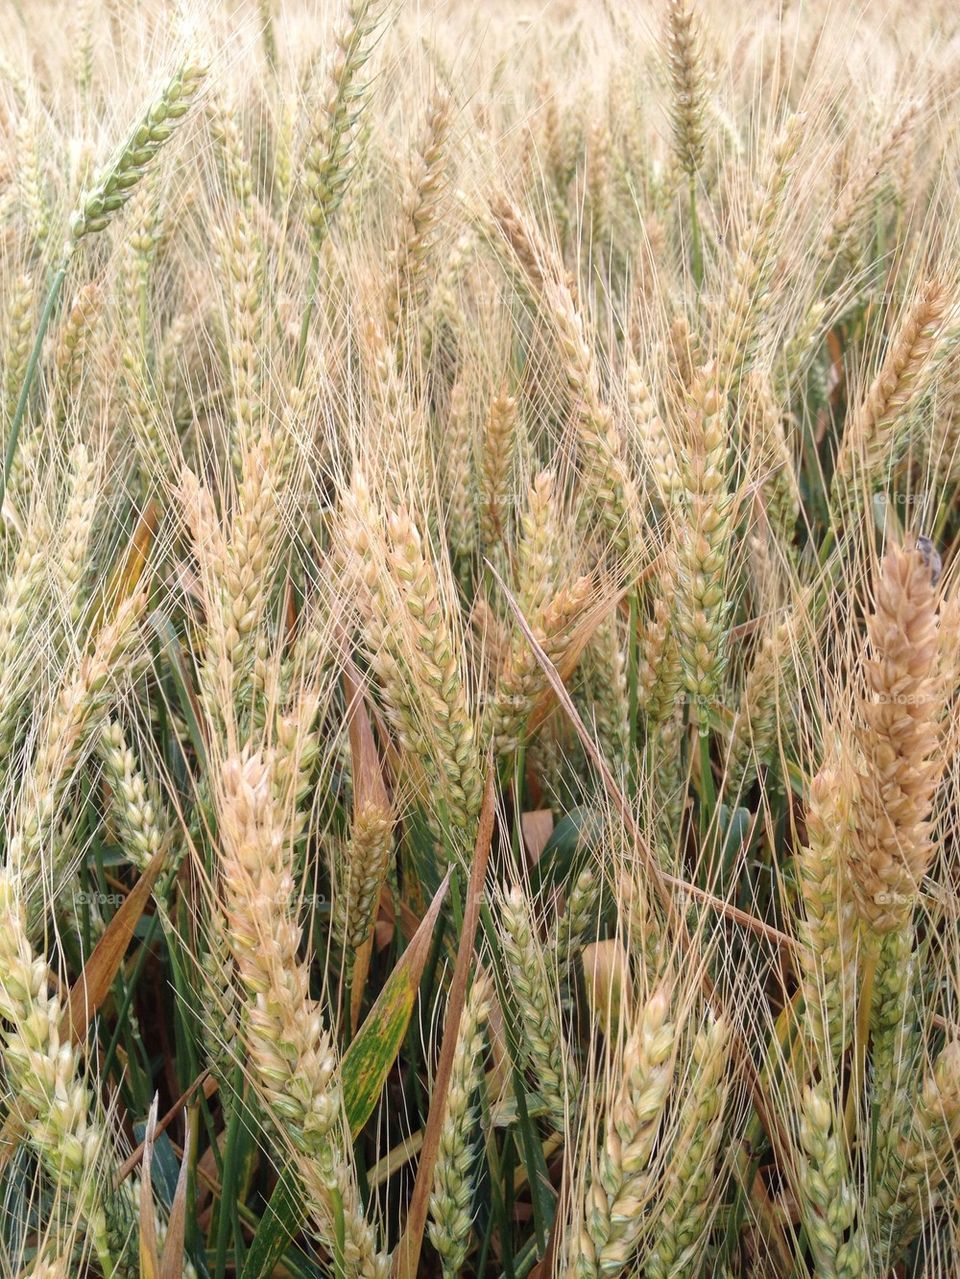 Close-up of barley grass